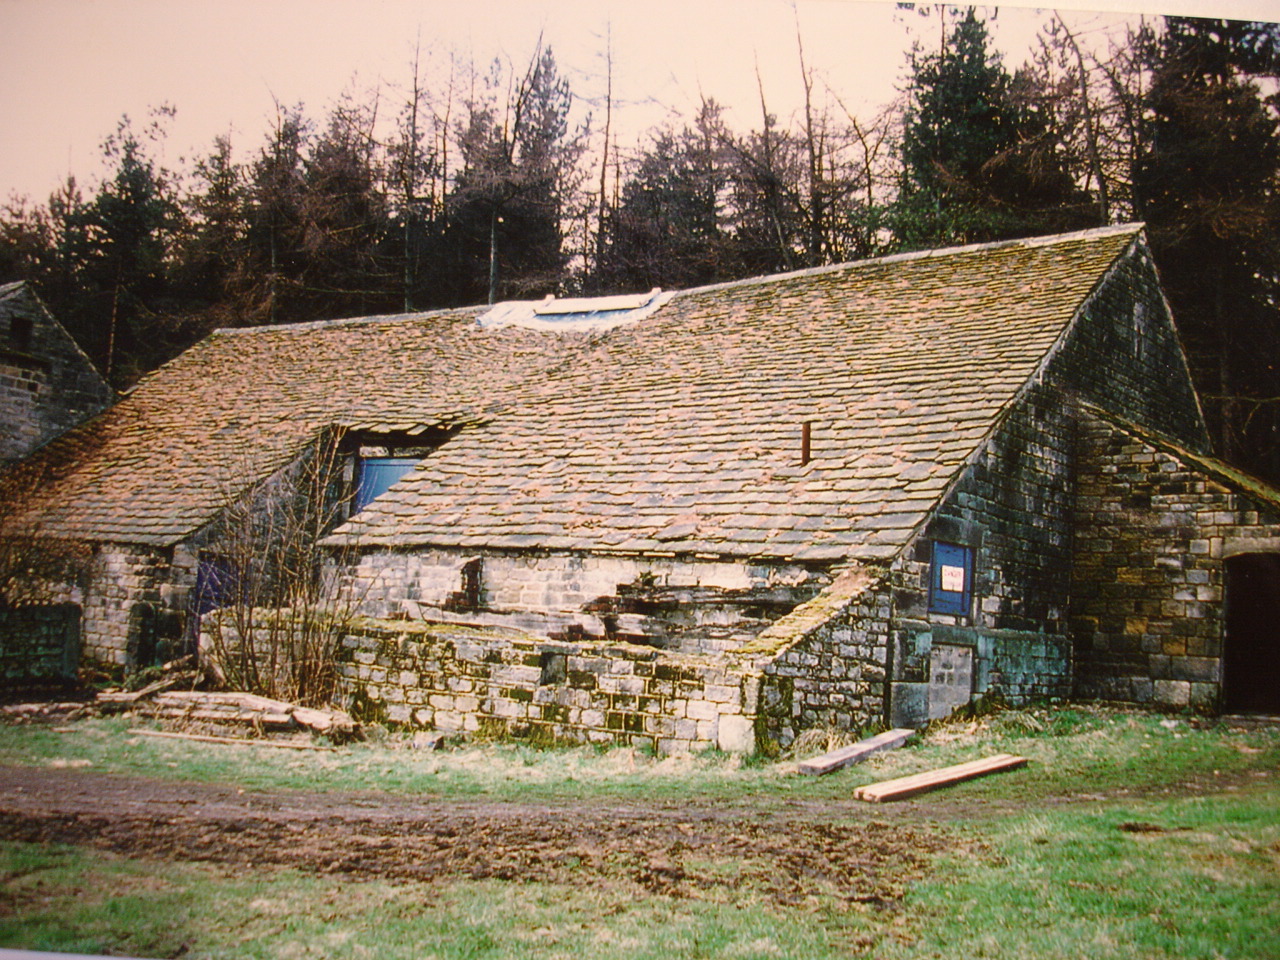 Langsett Barn 1980s